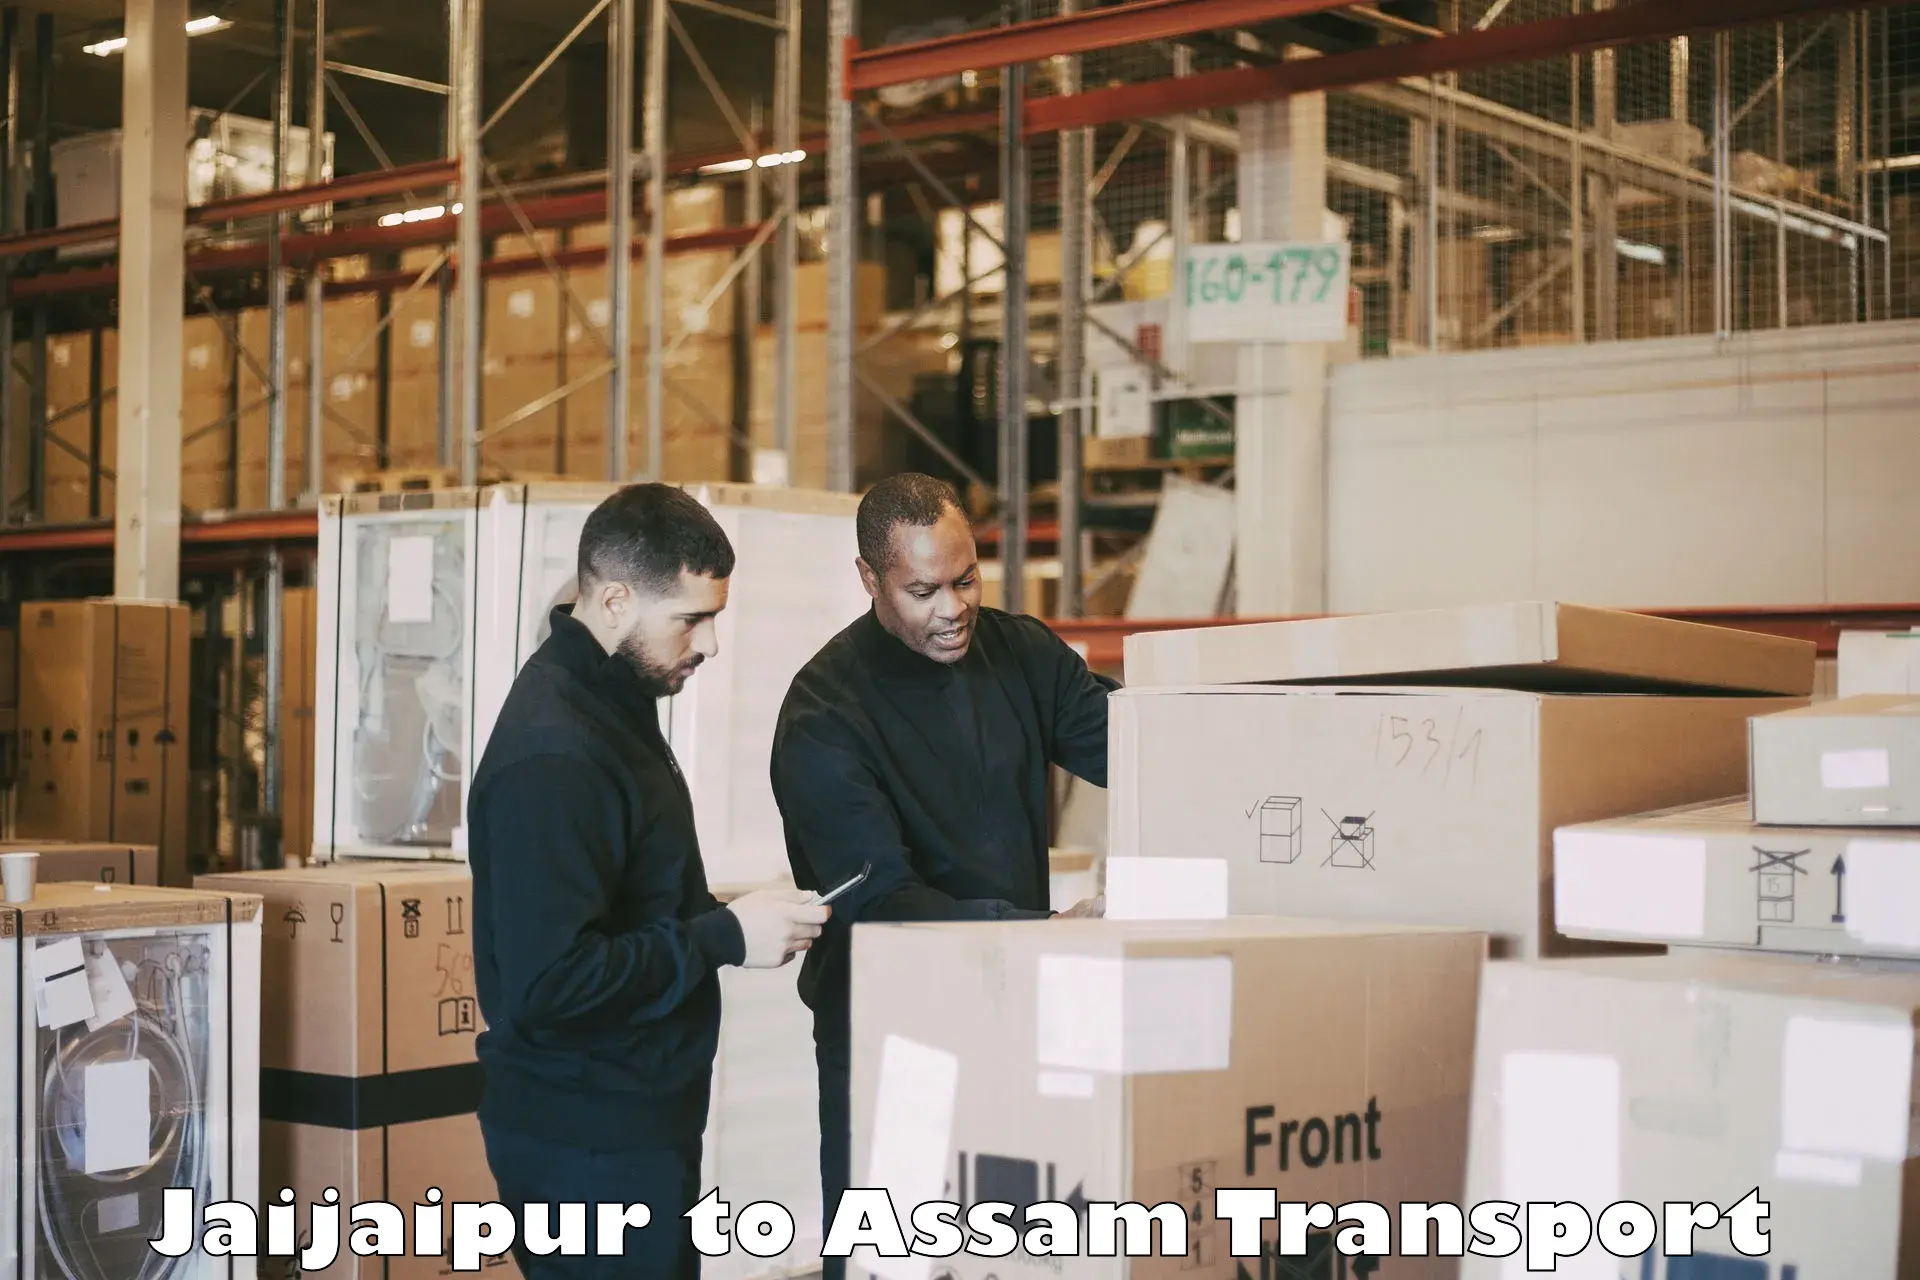 Intercity transport Jaijaipur to Chaparmukh